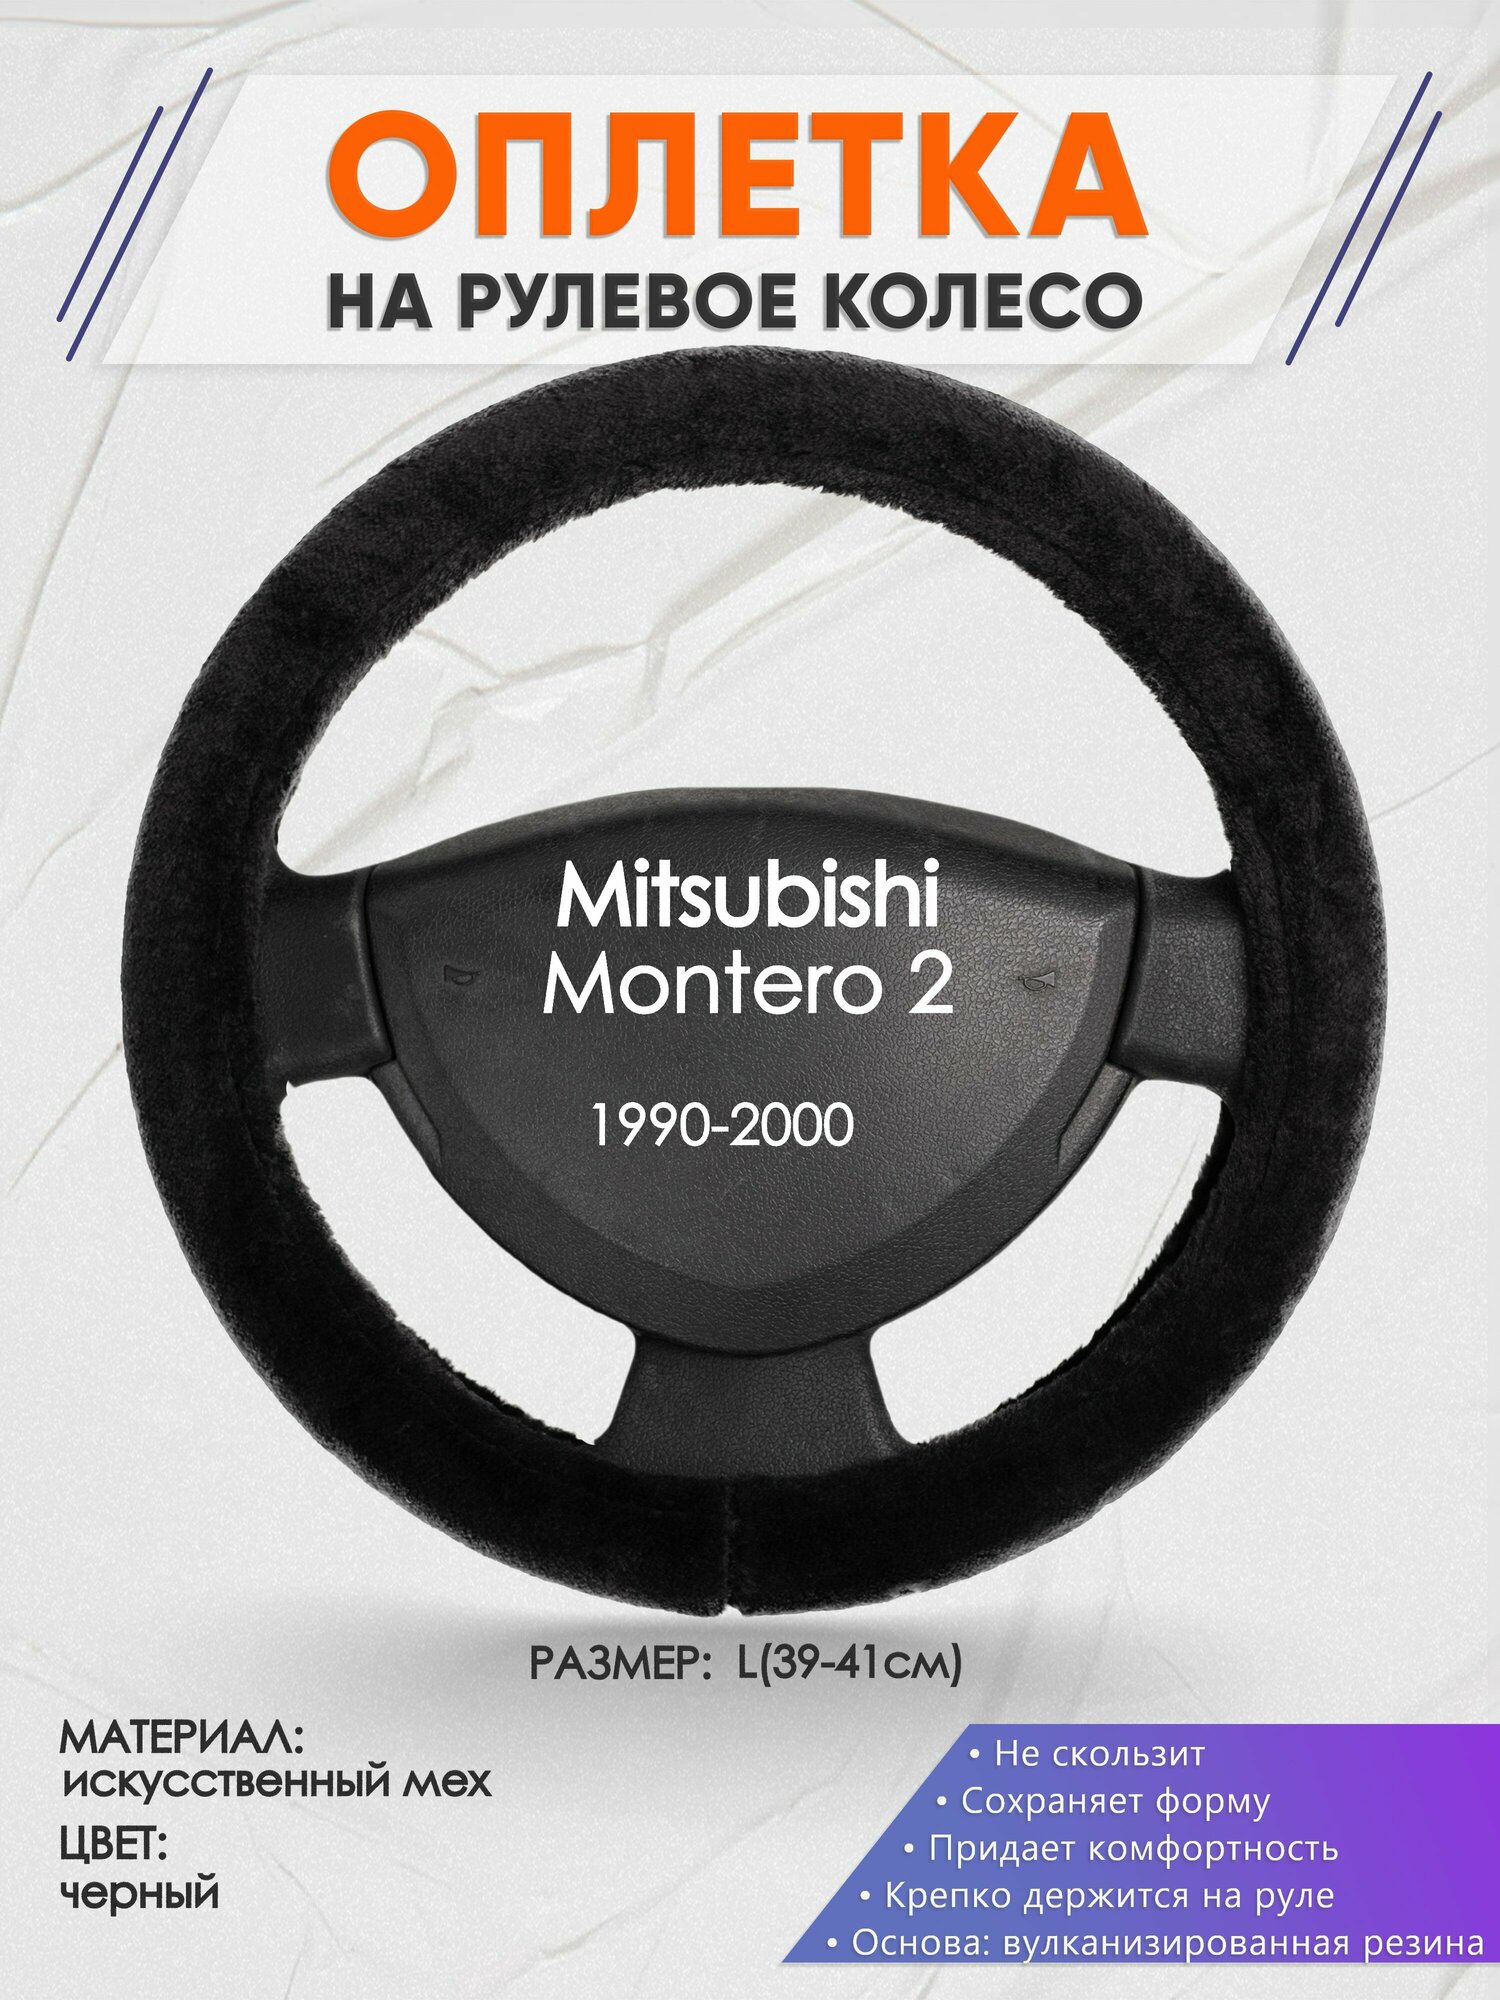 Оплетка на руль для Mitsubishi Montero 2(Митсубиси Монтеро 2) 1990-2000, L(39-41см), Искусственный мех 45